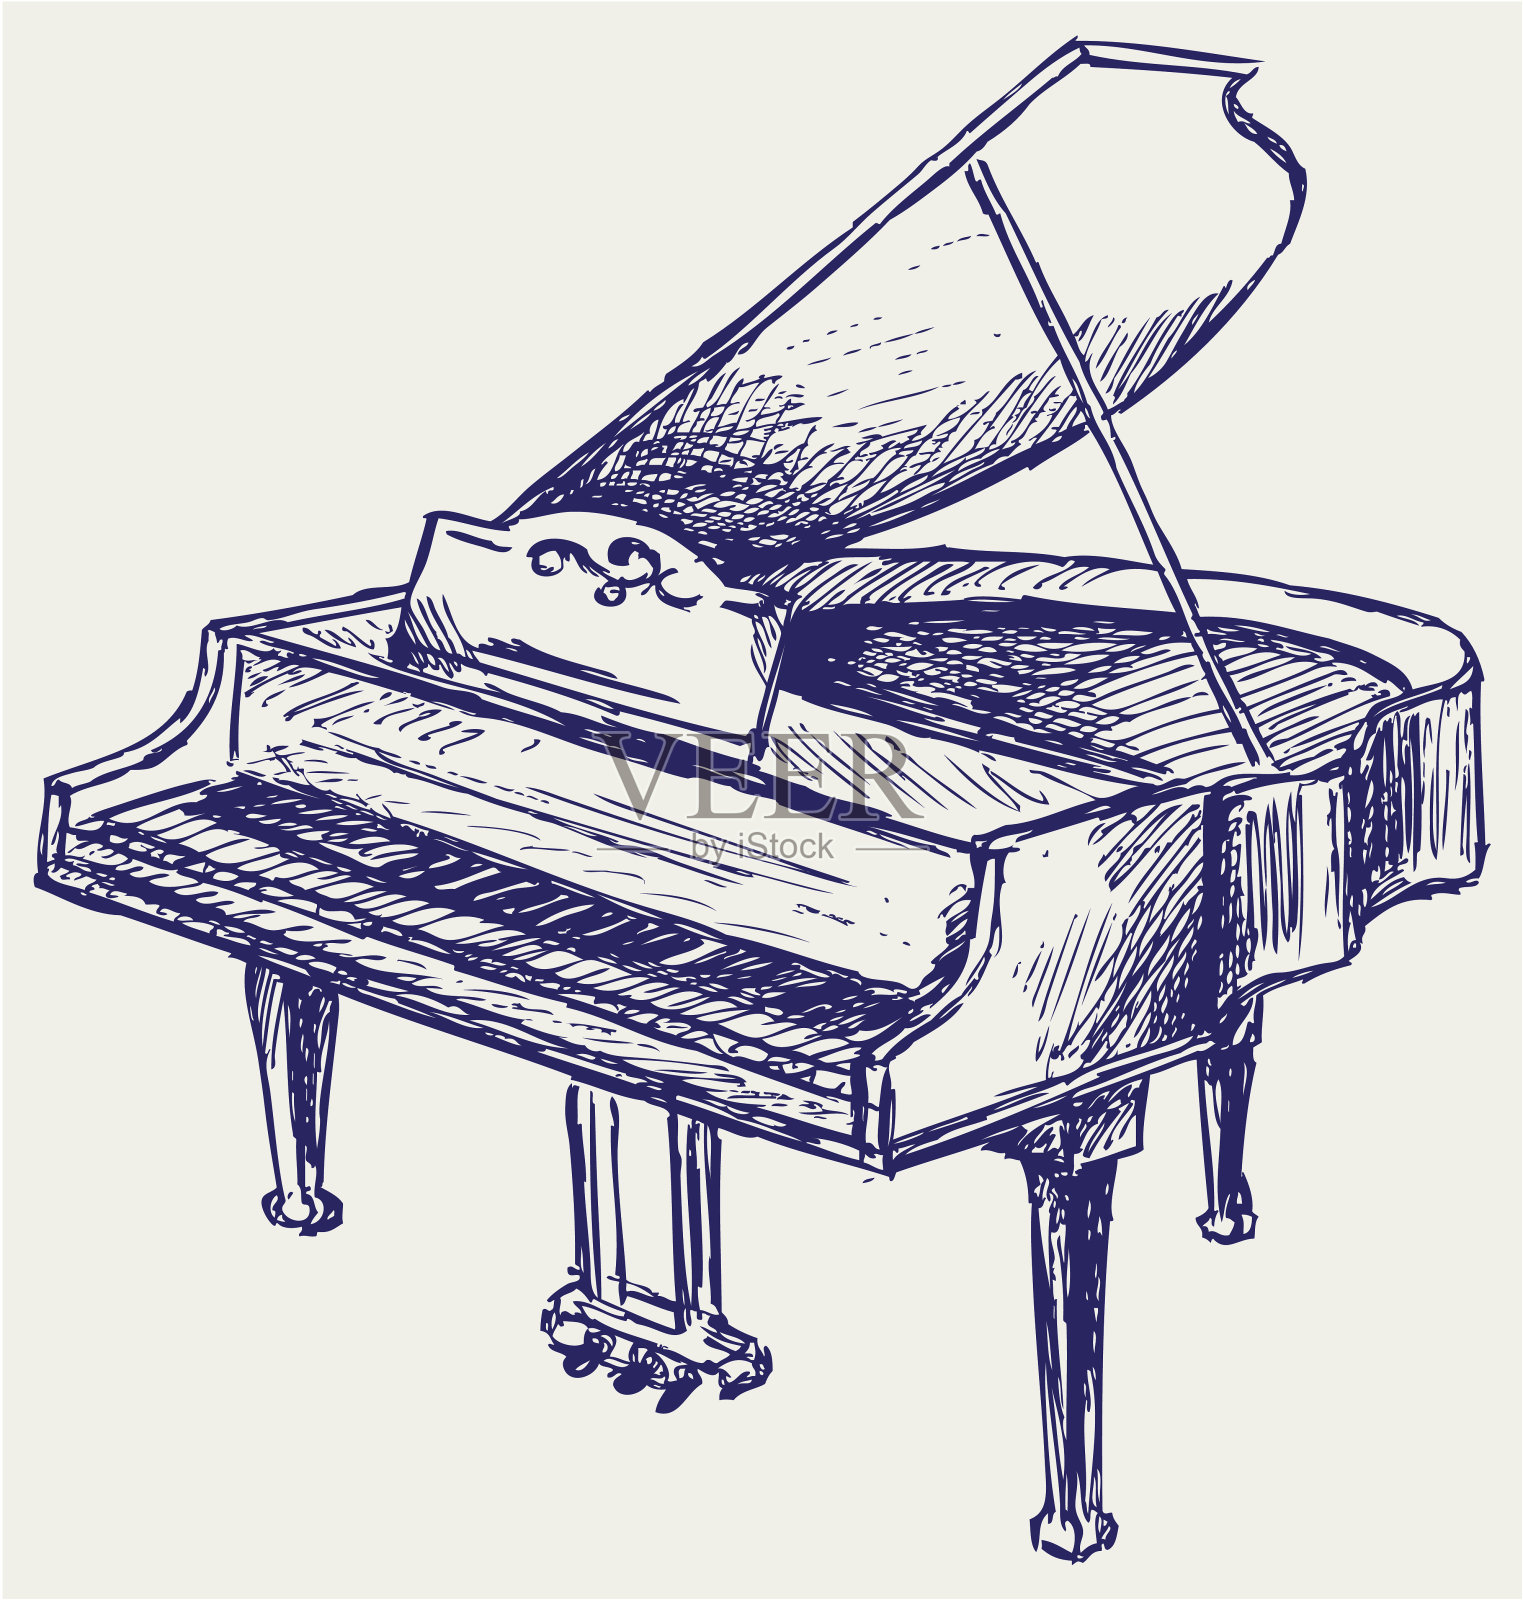 一幅用钢笔和墨水绘制的钢琴插图插画图片素材